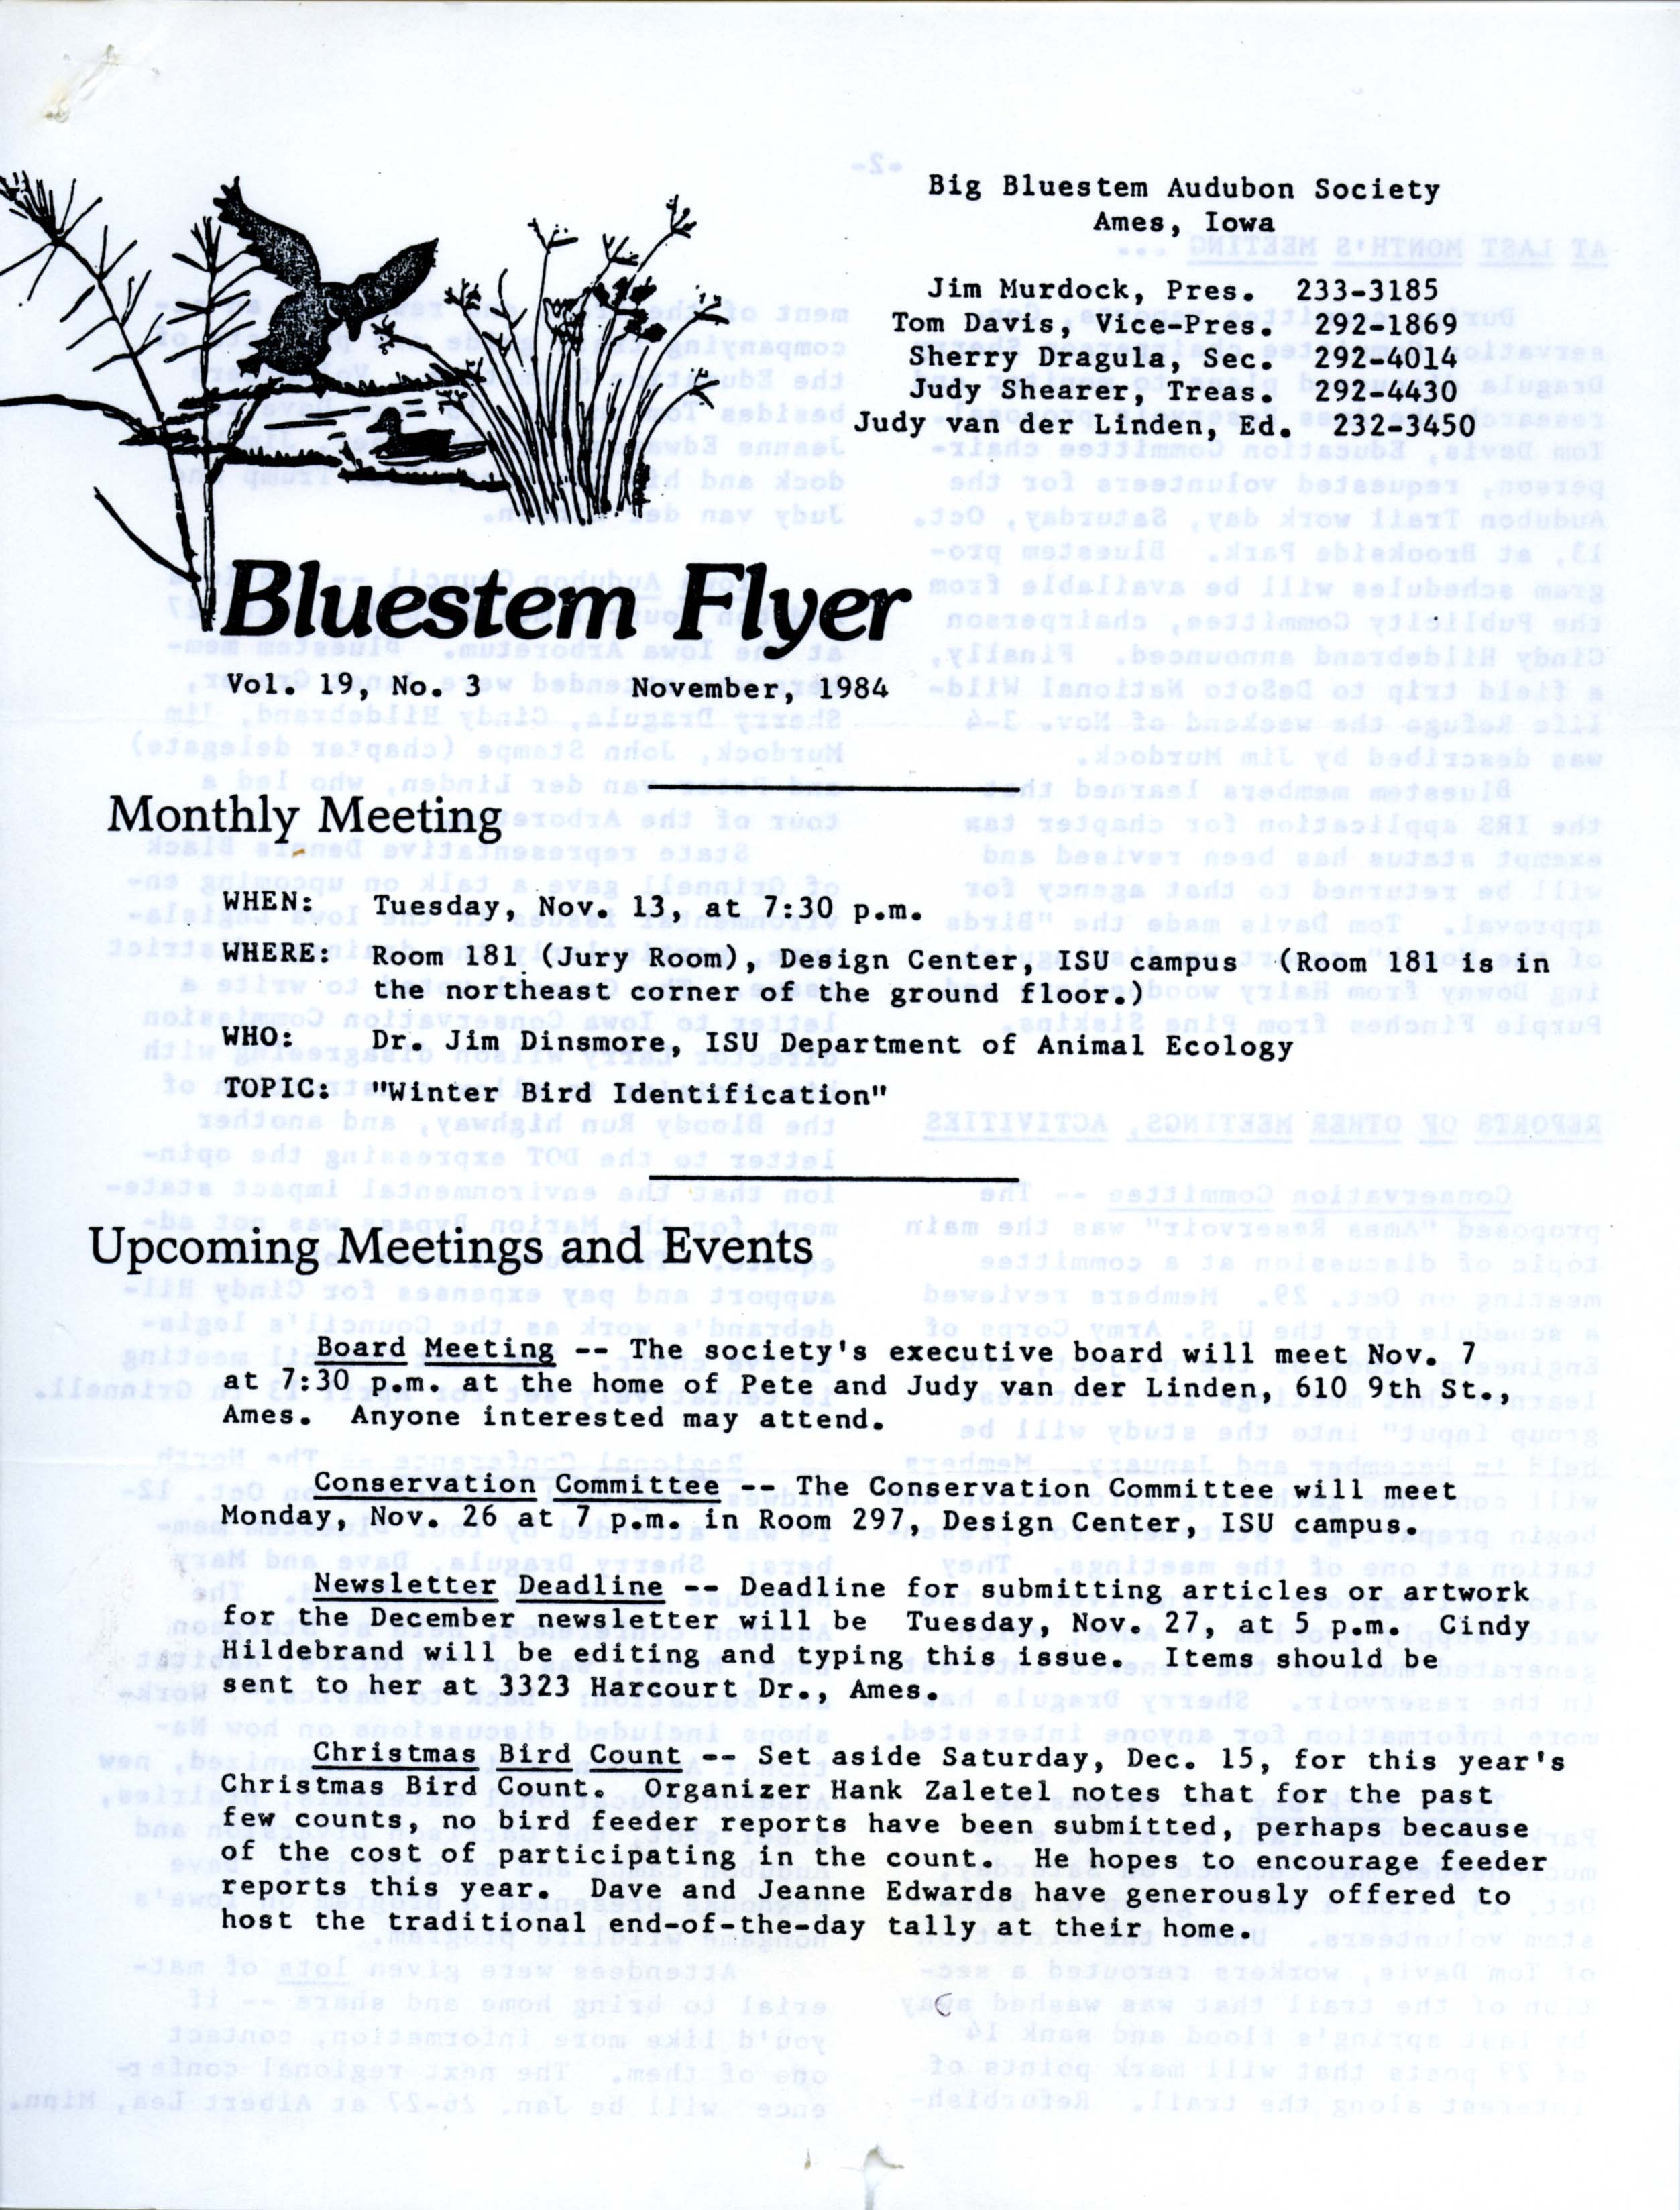 Bluestem Flyer, Volume 19, Number 3, November 1984